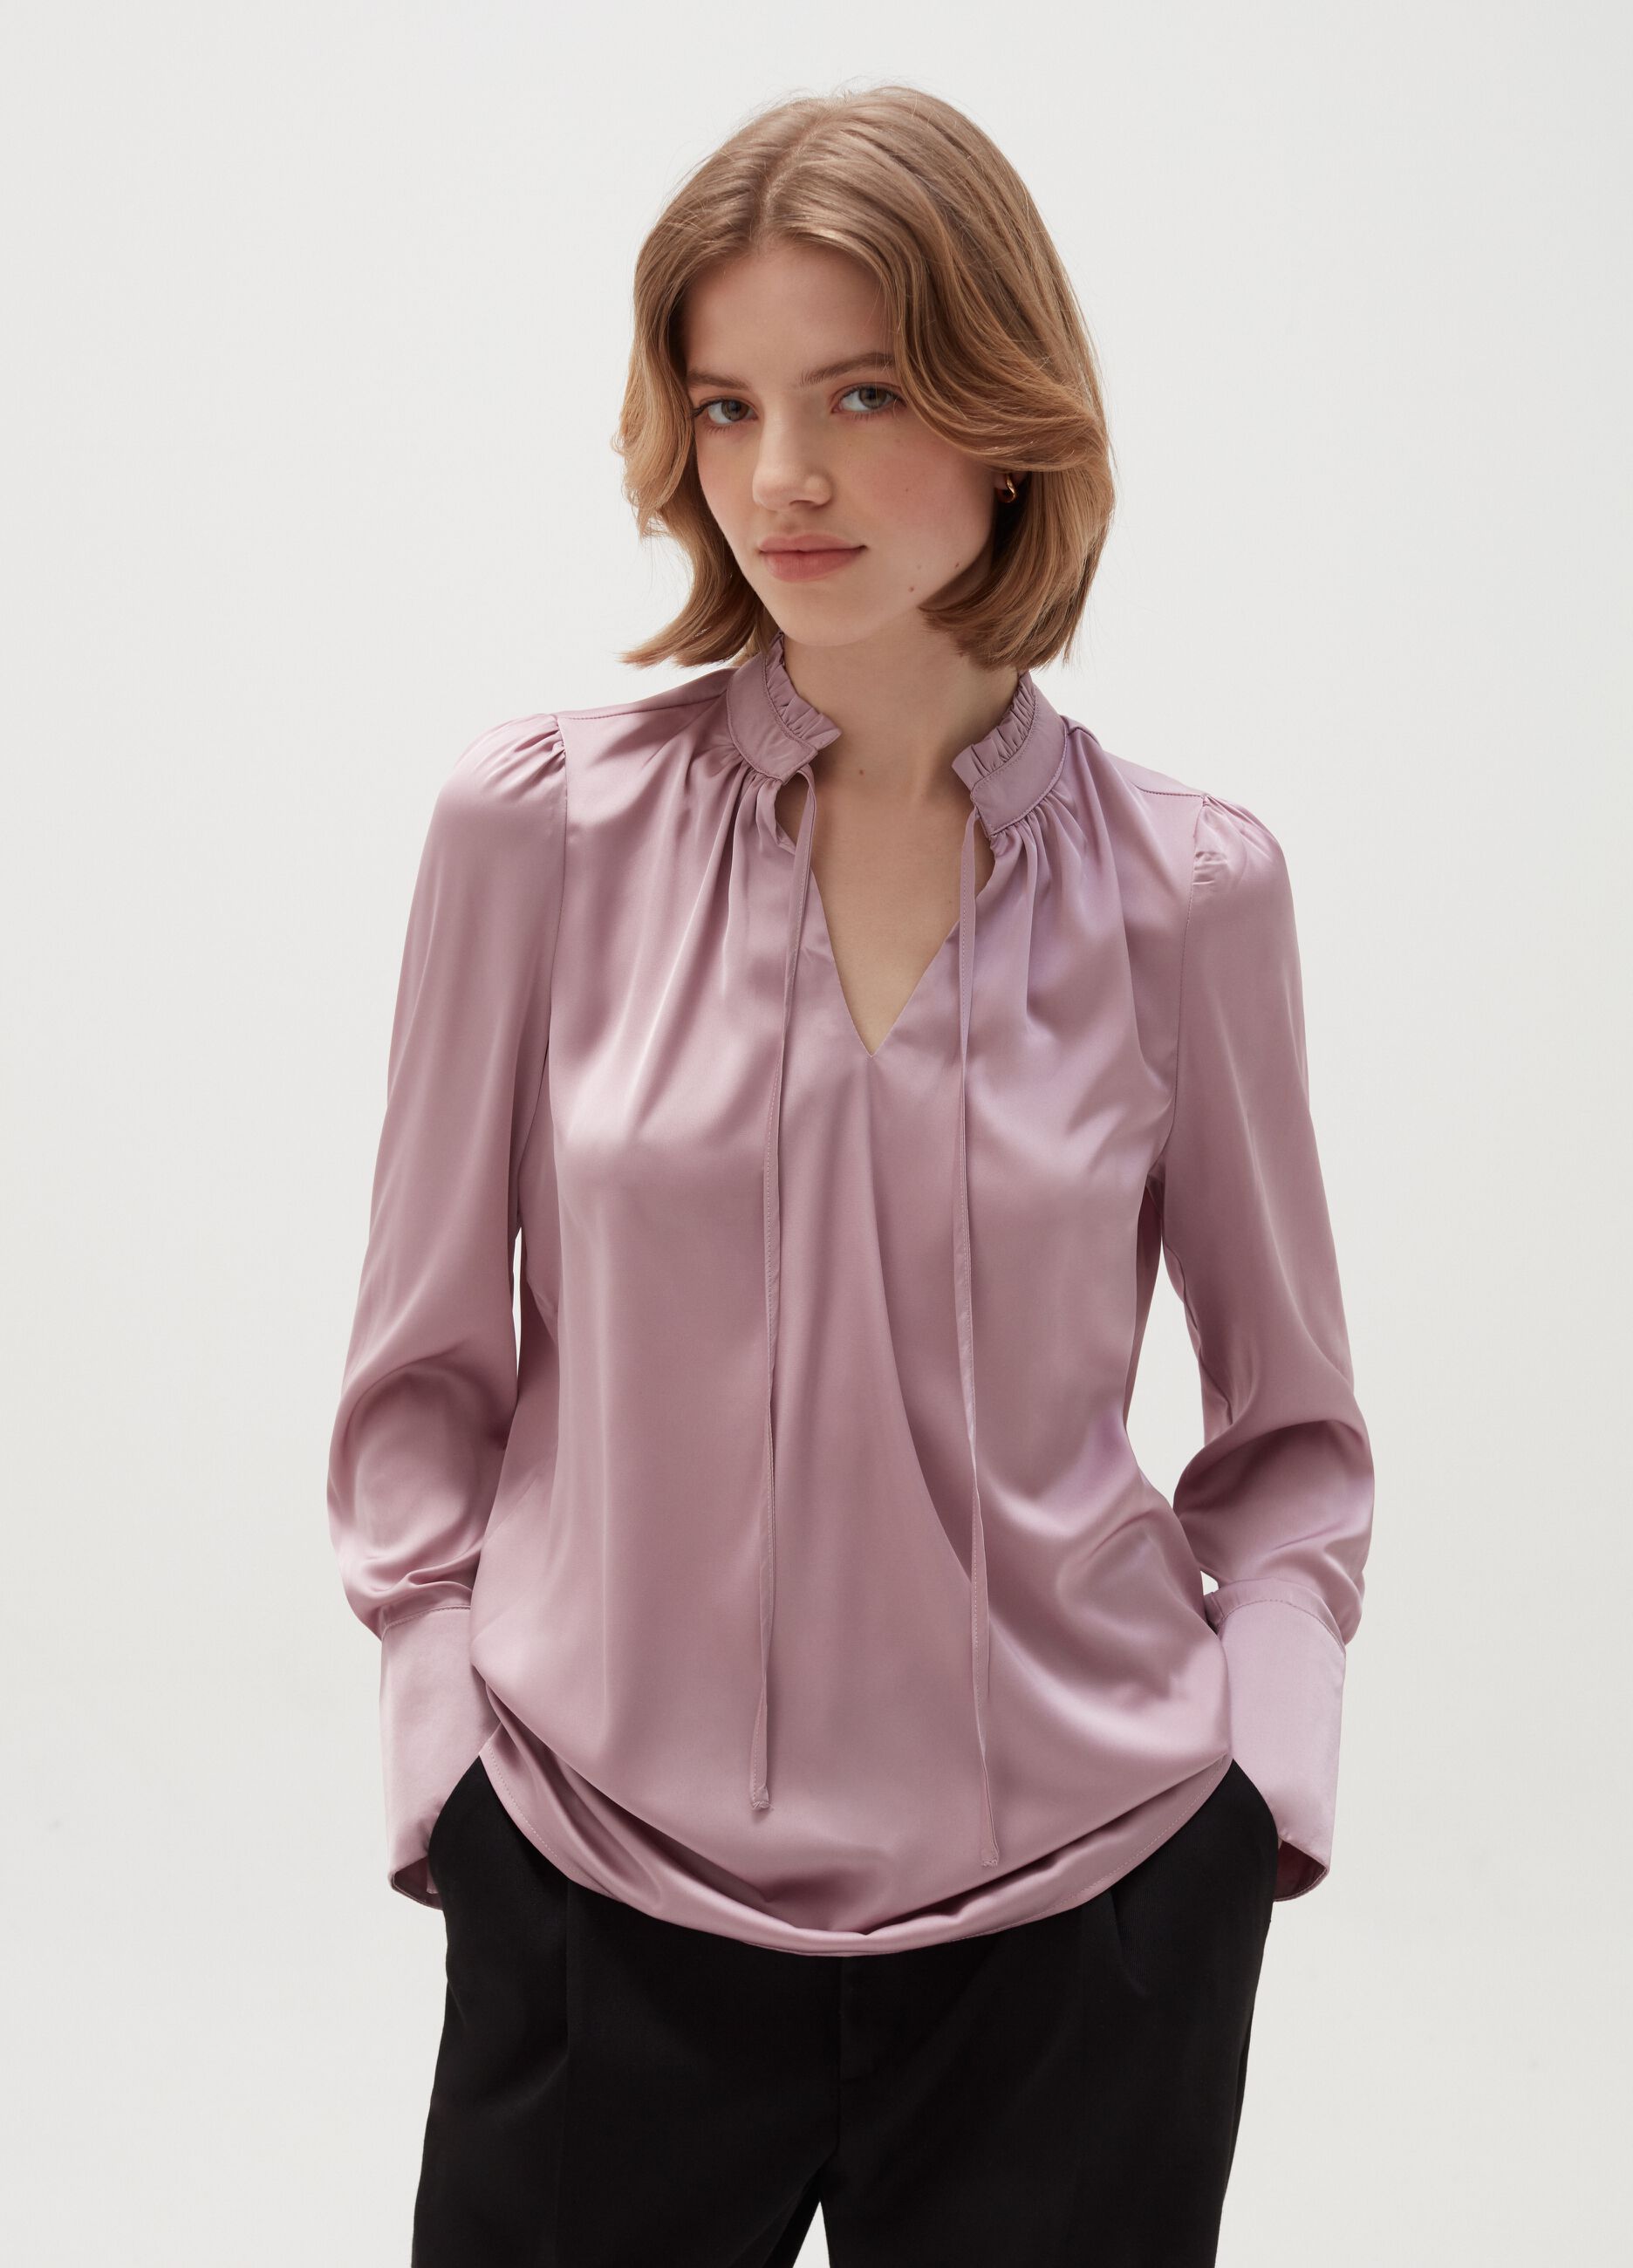 Satin blouse with flounce